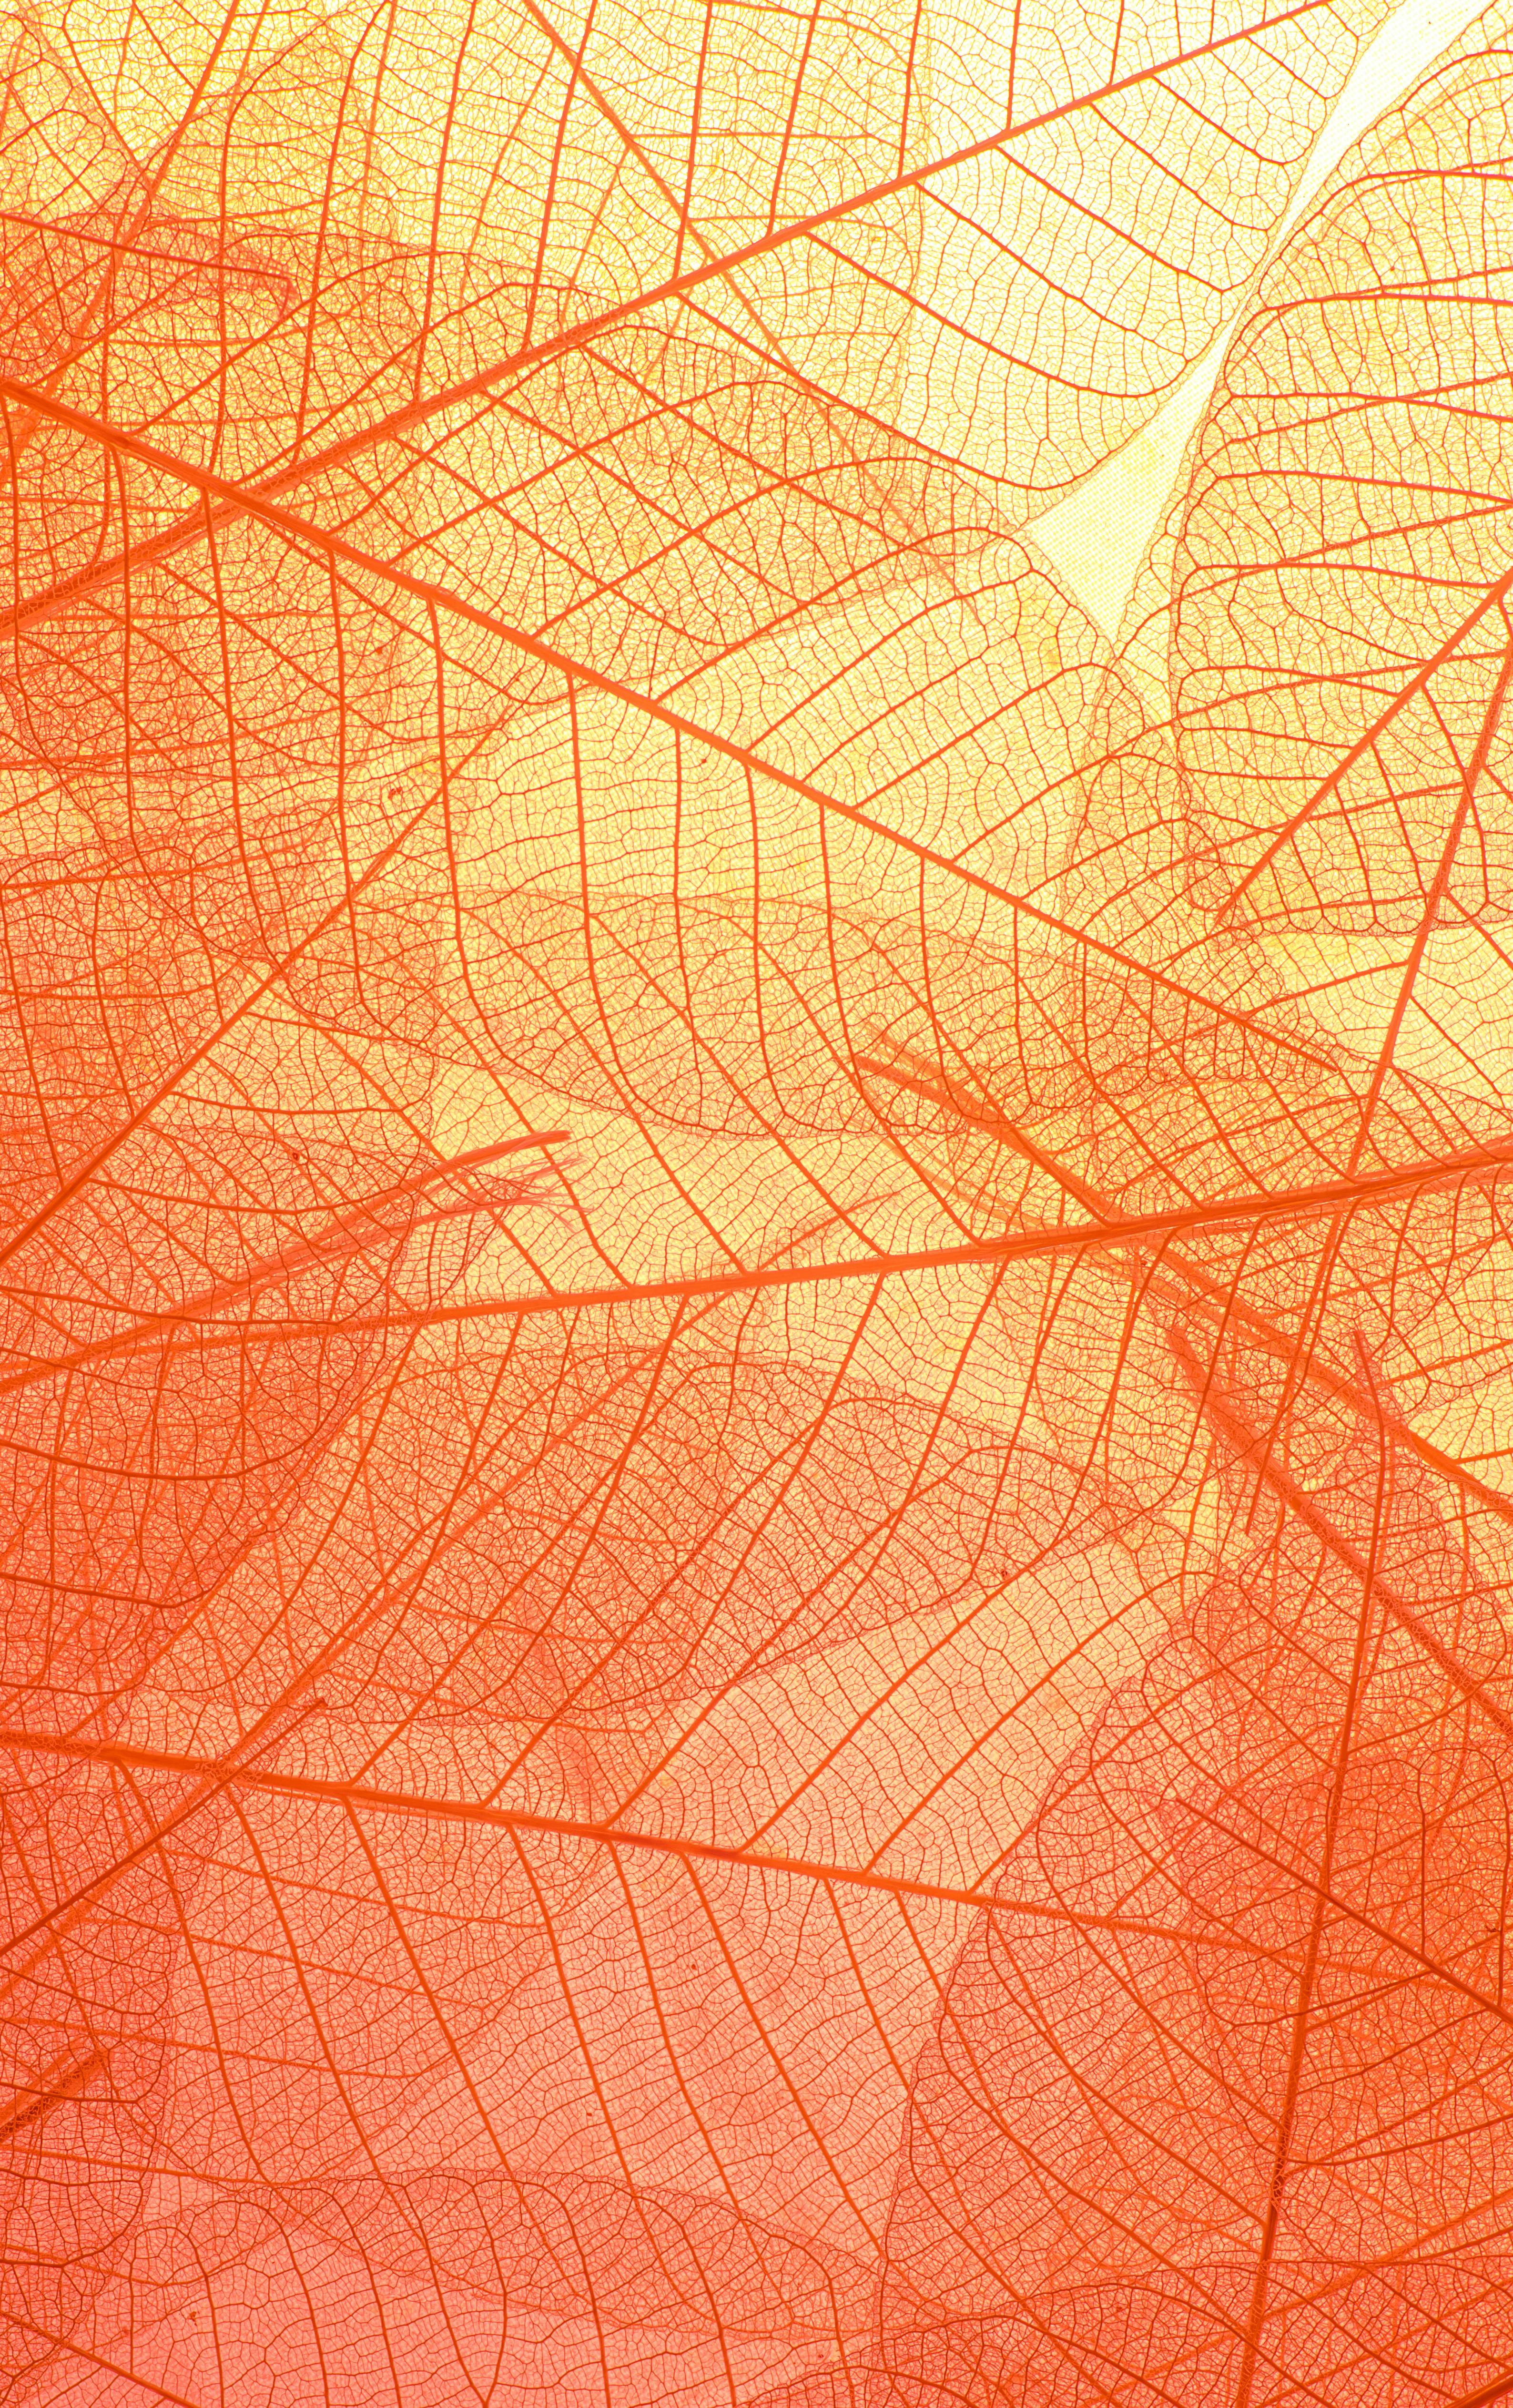 Download miễn phí 500 Wallpaper background orange đẹp và sáng tạo